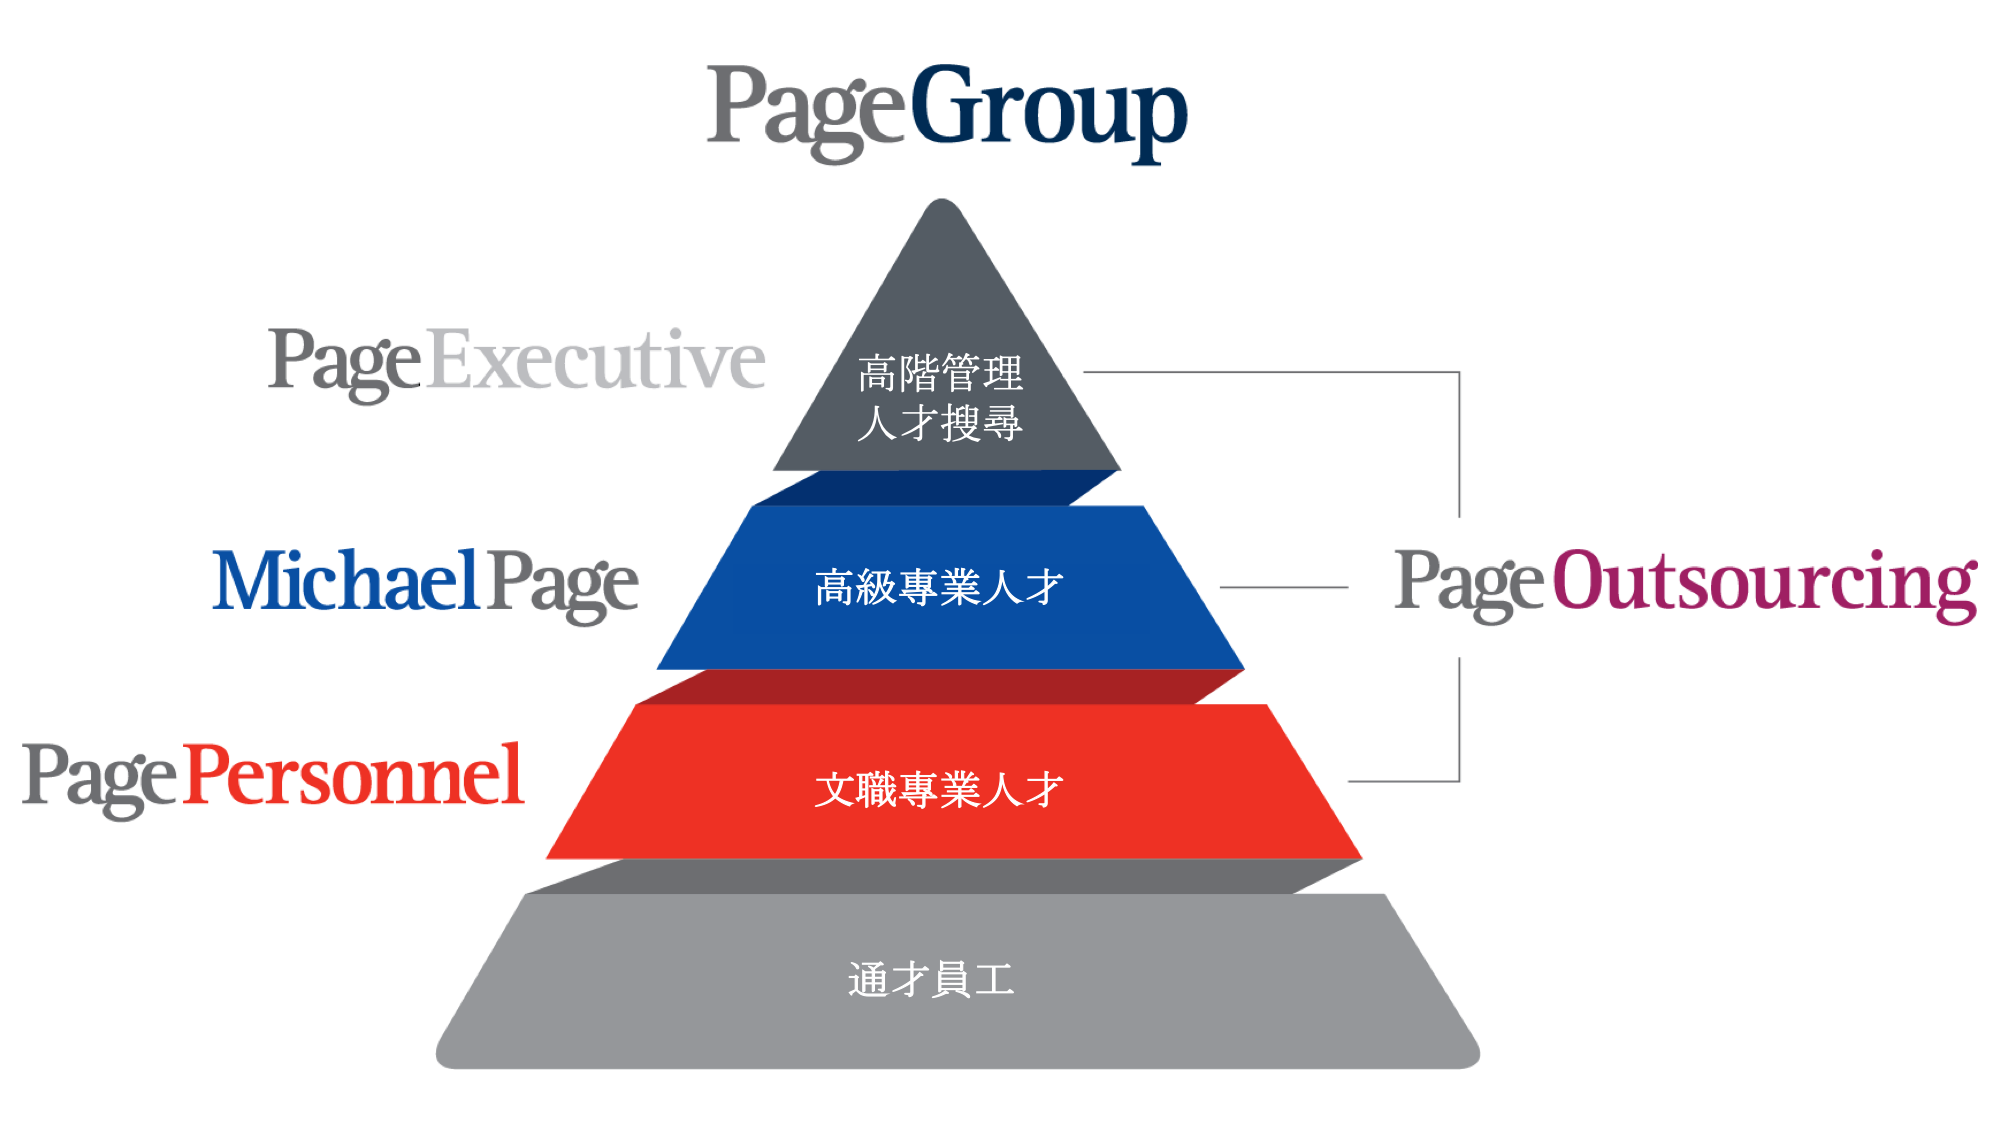 PageGroup pyramid